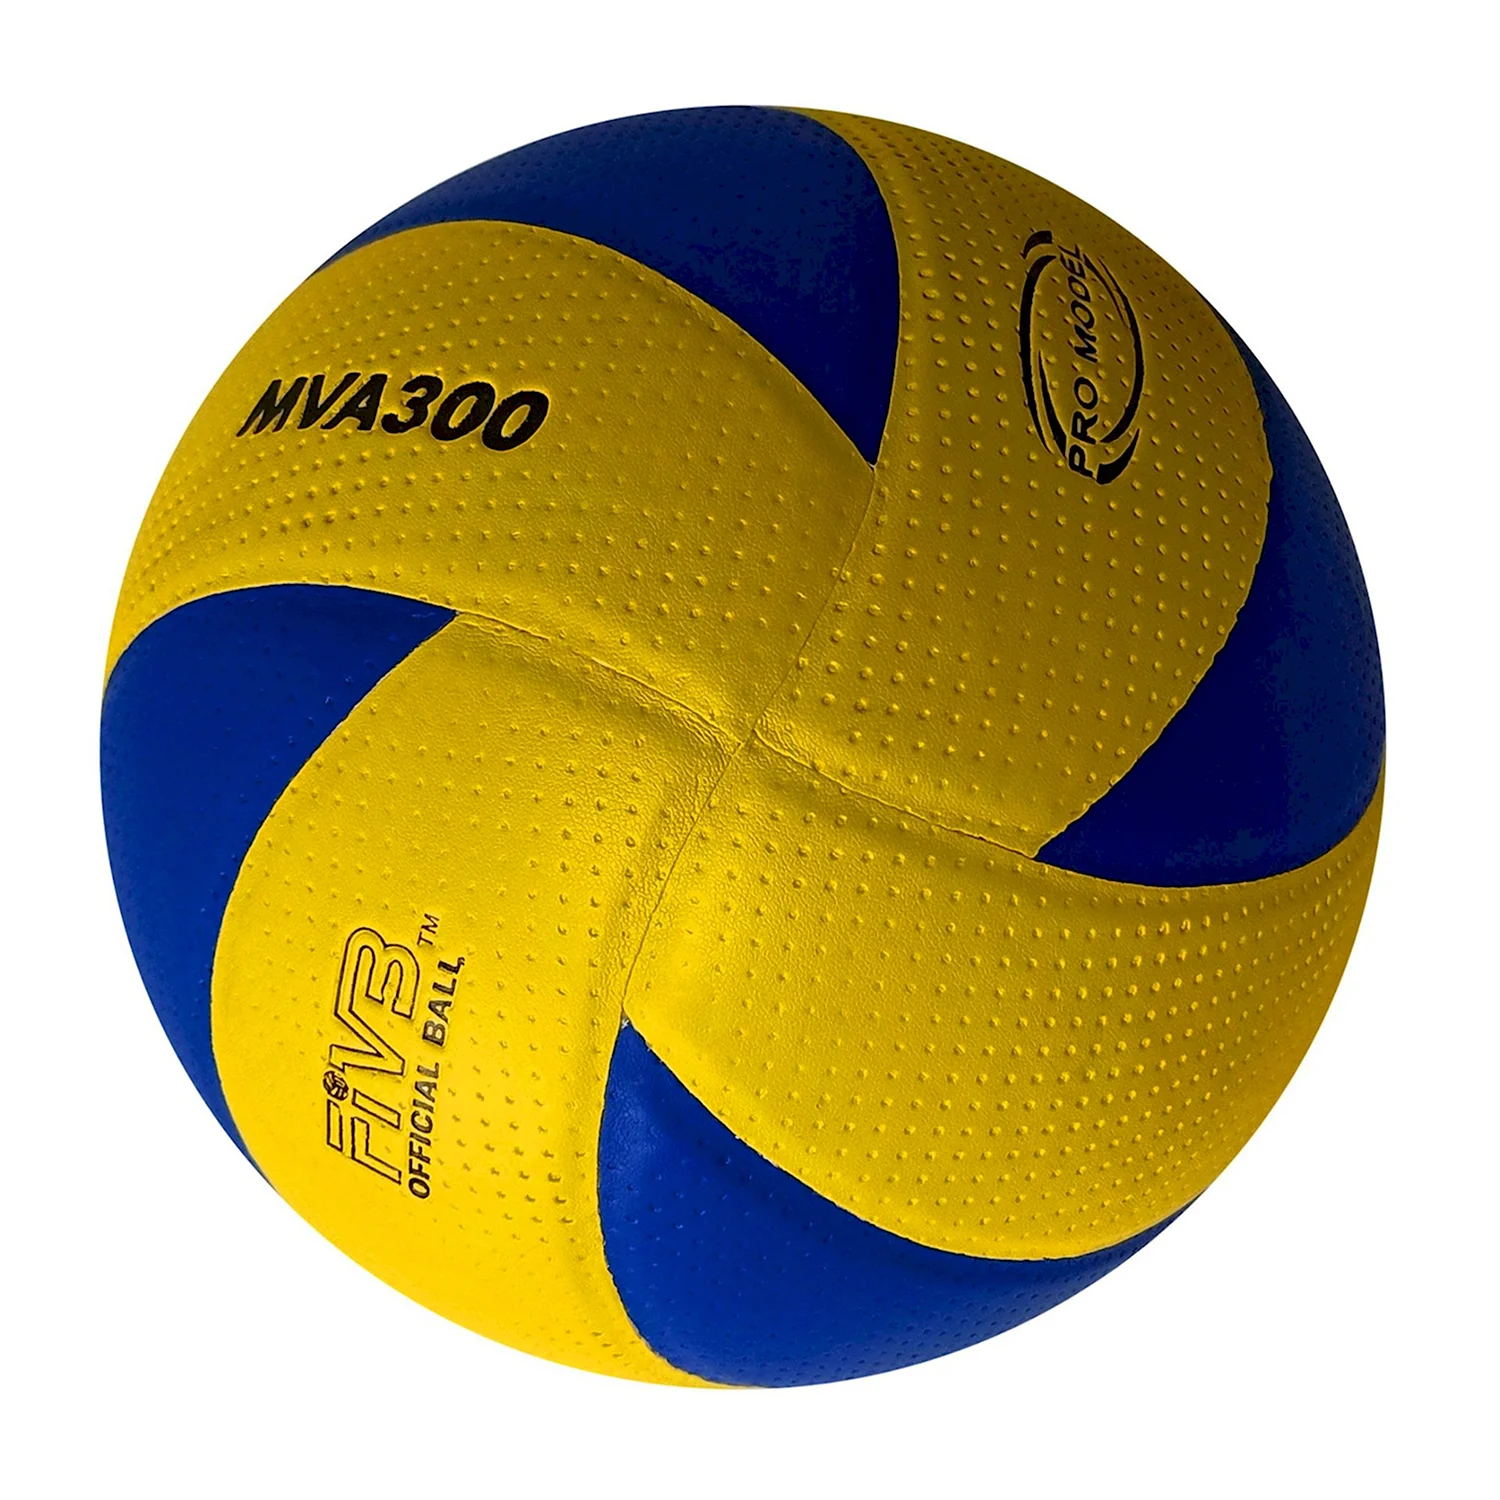 KIPSTA v300 волейбольный мяч